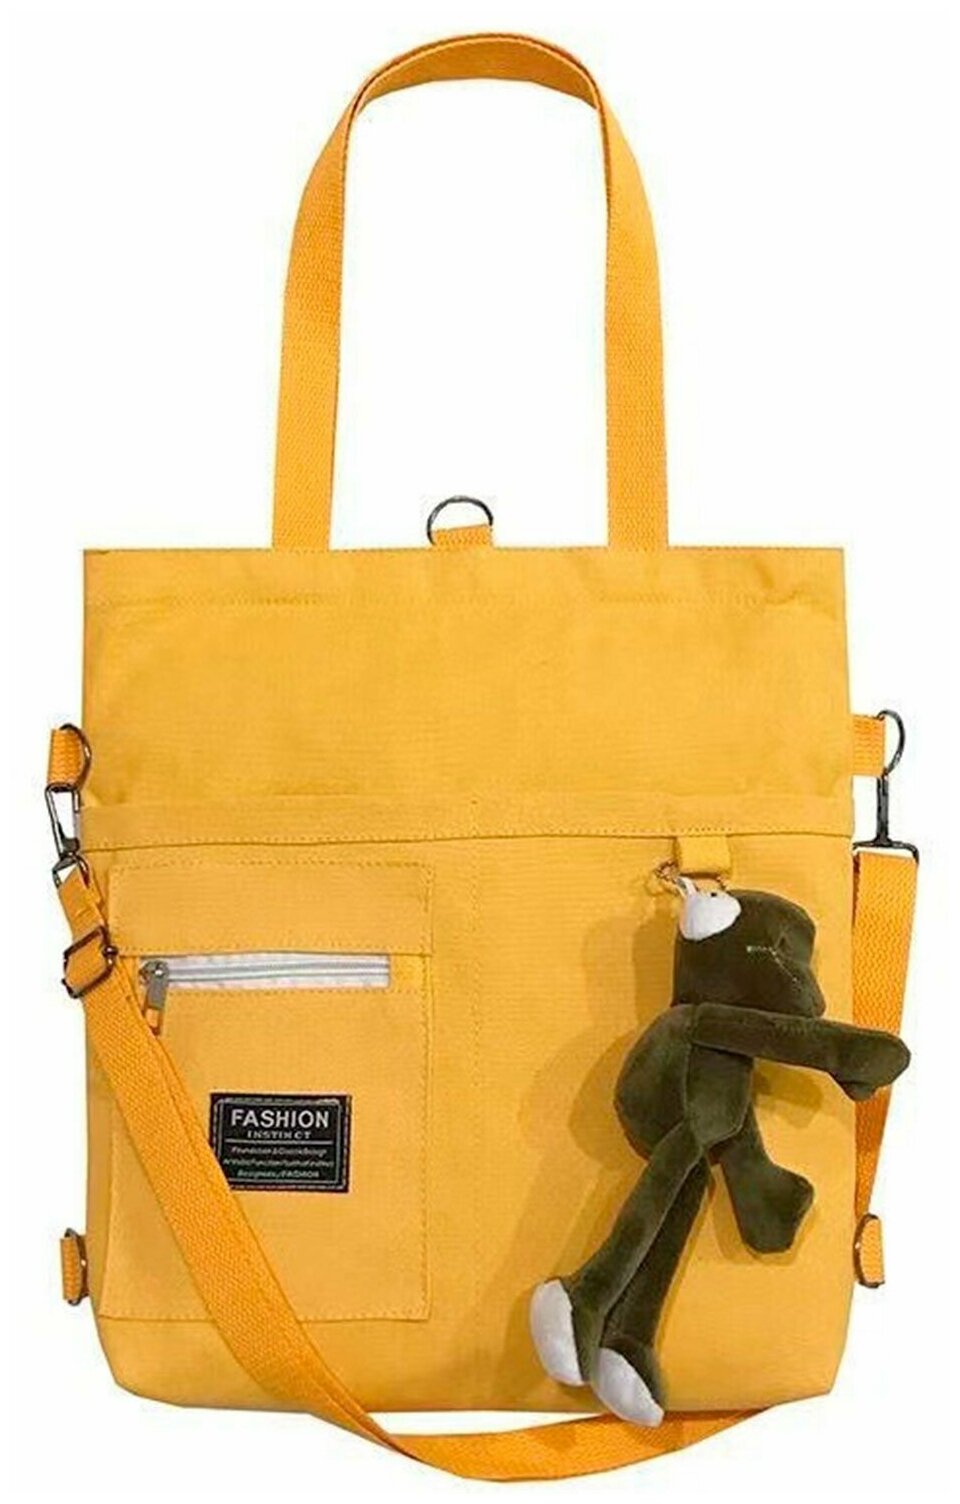 ALMOND шоппер желтый cумка шоппер cумка женская сумка-рюкзак холщовая сумка шоппер детский шоппер для девочки сумка-шоппер женская сумка